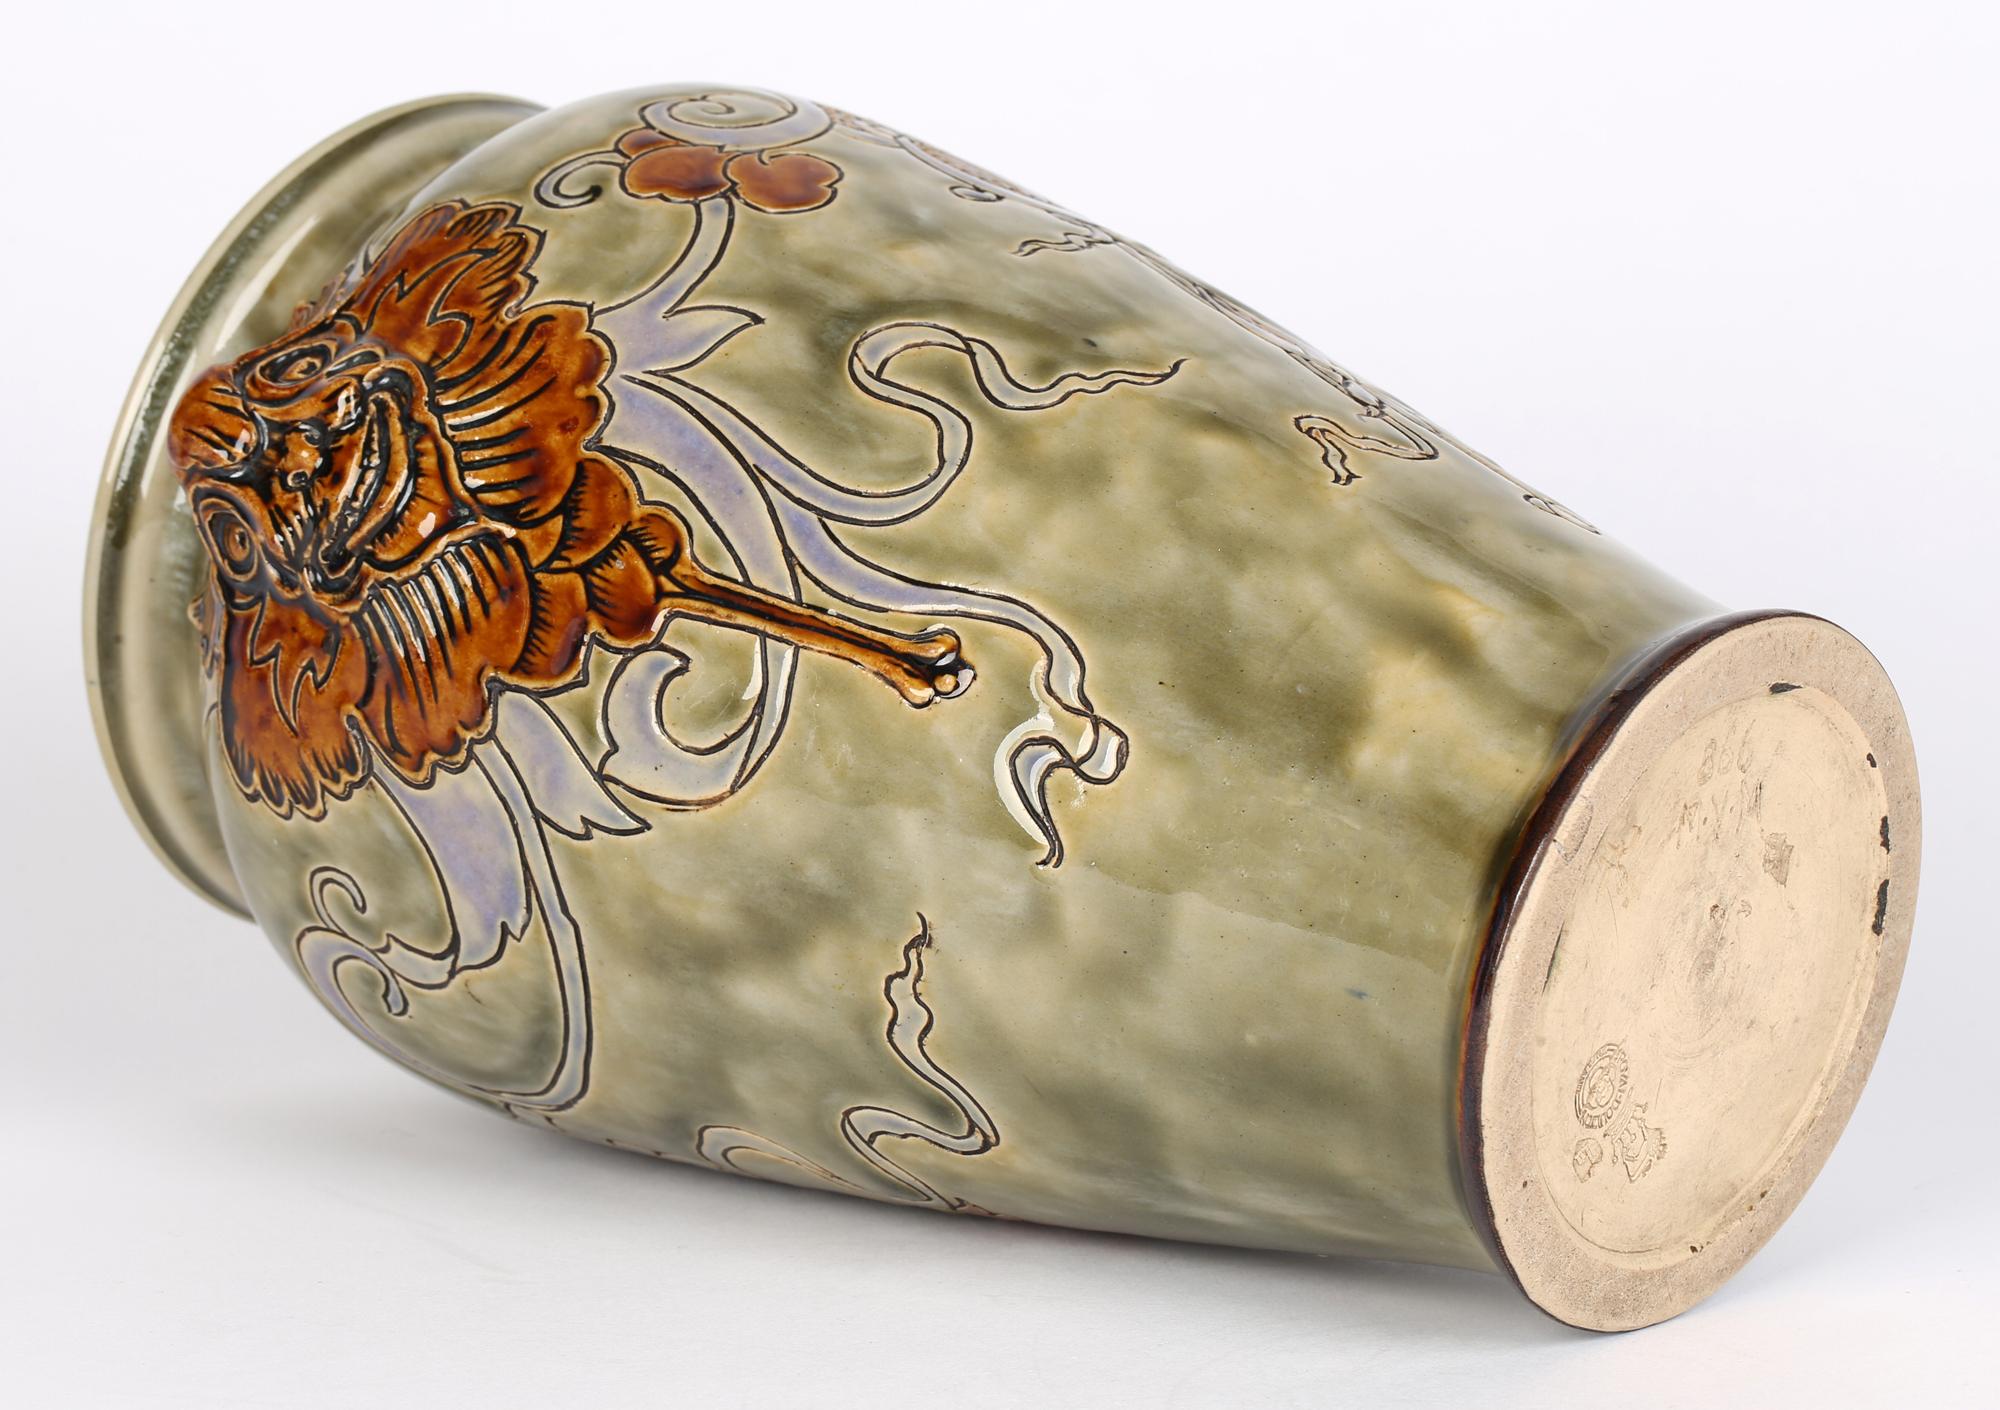 Un rare et étonnant vase Doulton Lambeth Art Nouveau décoré de masques grotesques de style gothique par Mark V Marshall et daté de 1907. Le grand vase en grès, de forme bulbeuse arrondie, est décoré en relief de deux masques grotesques à glaçure